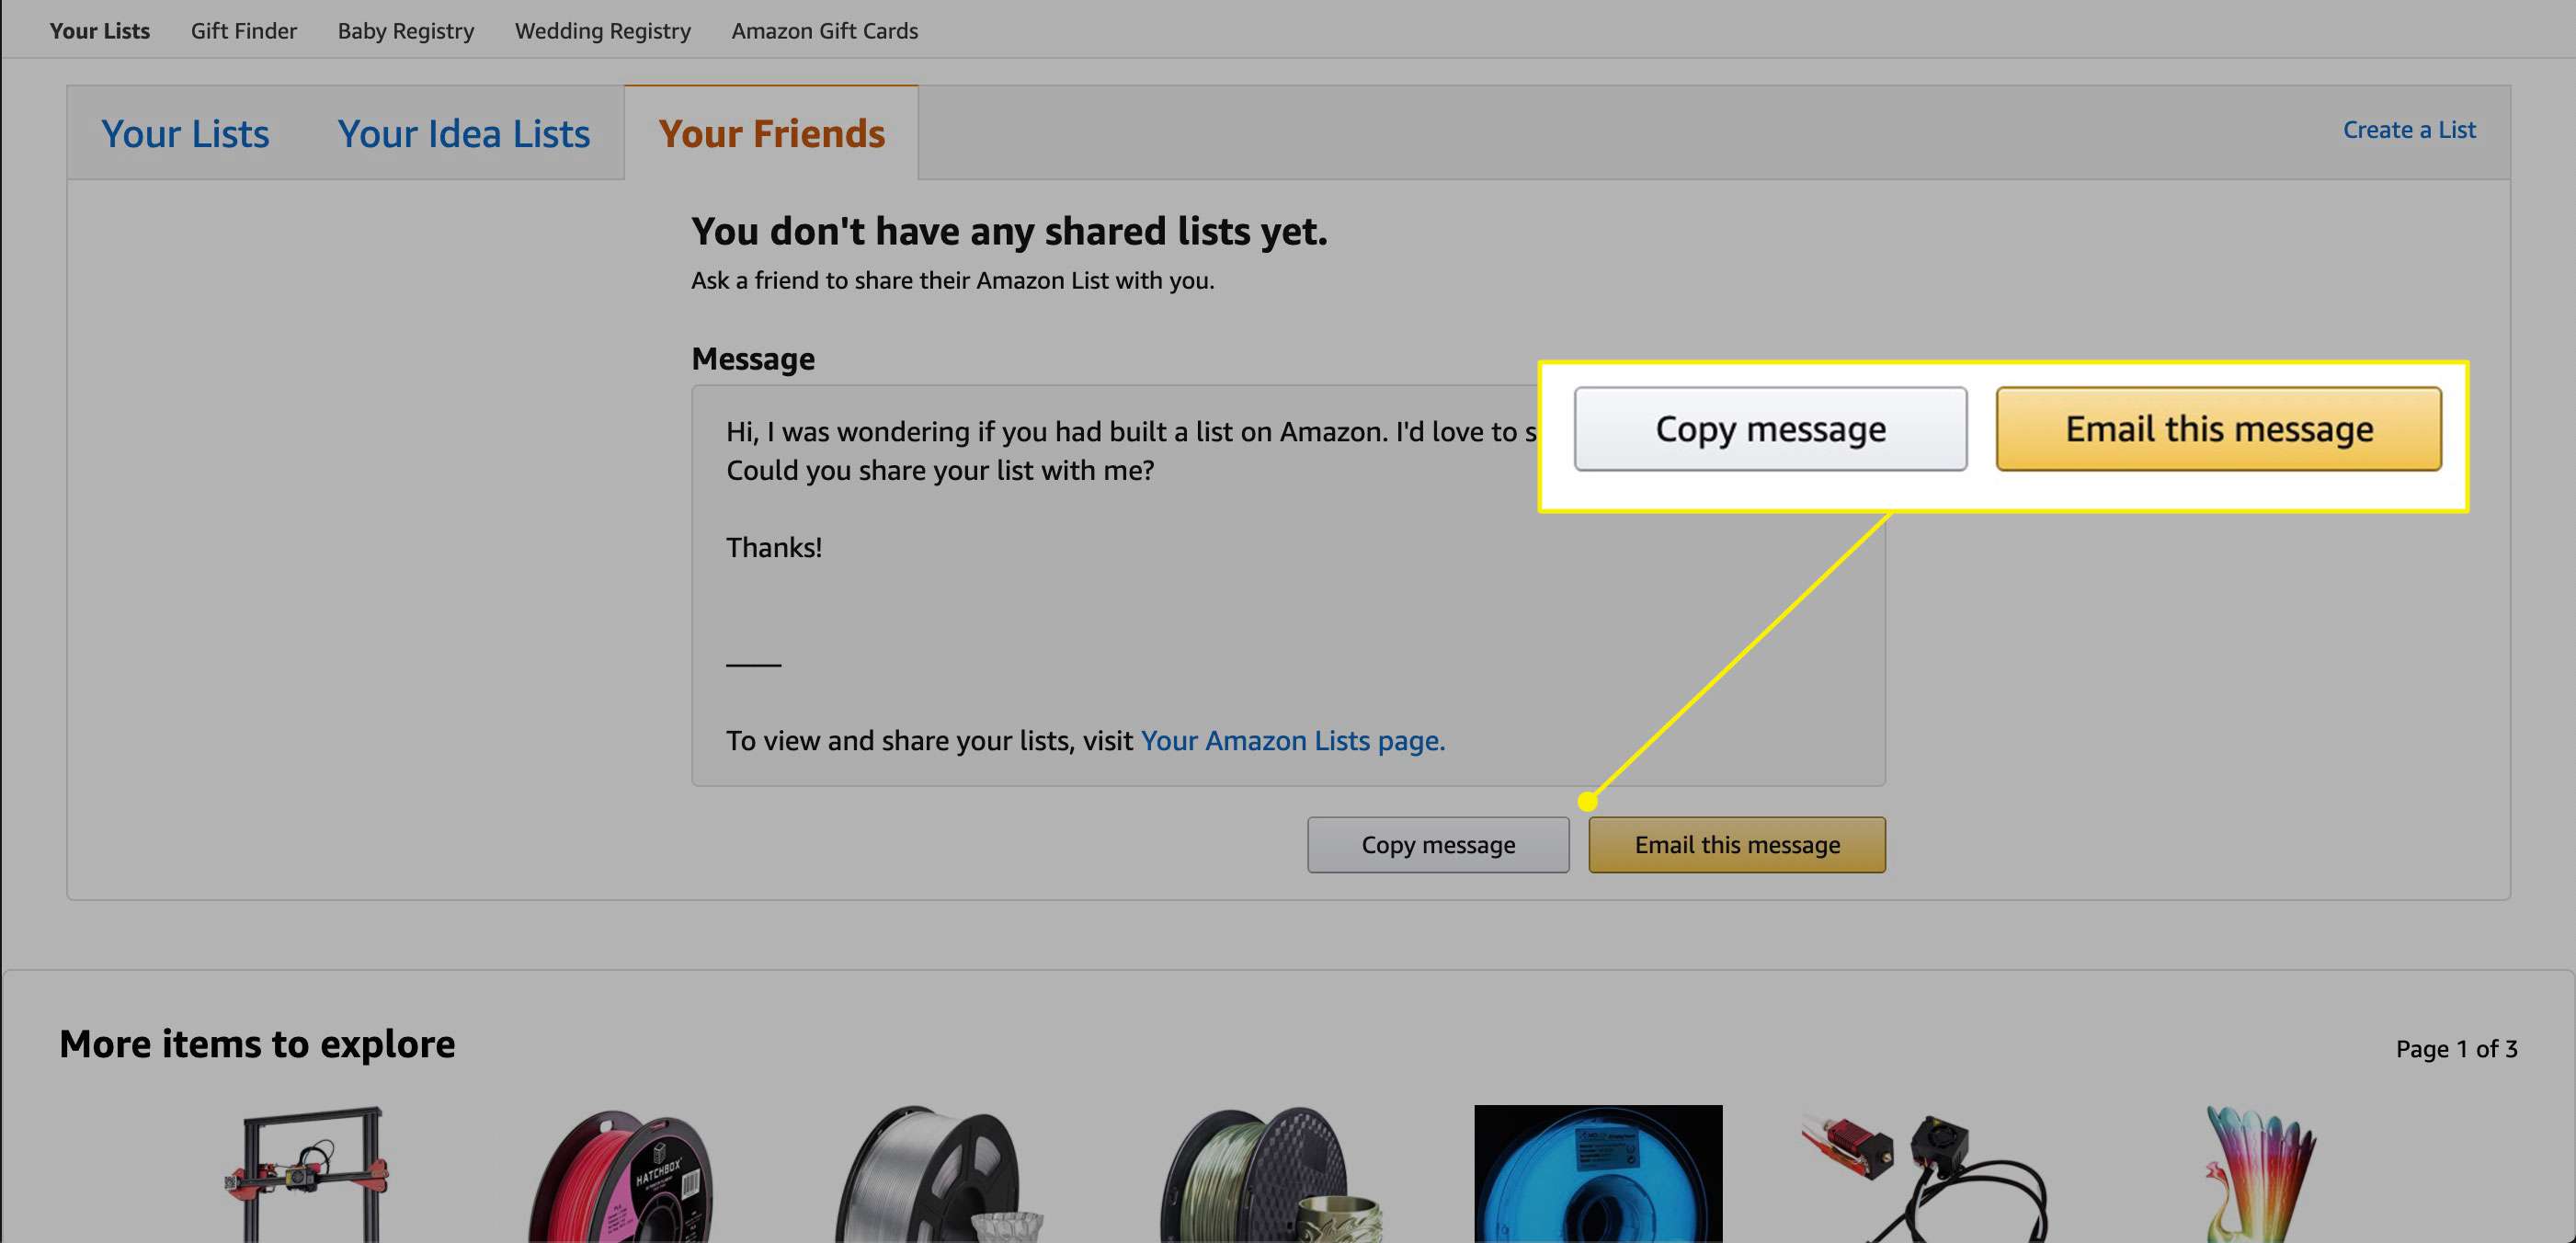 Možnosti kontaktu pro vyžádání seznamu přátel od Amazonu